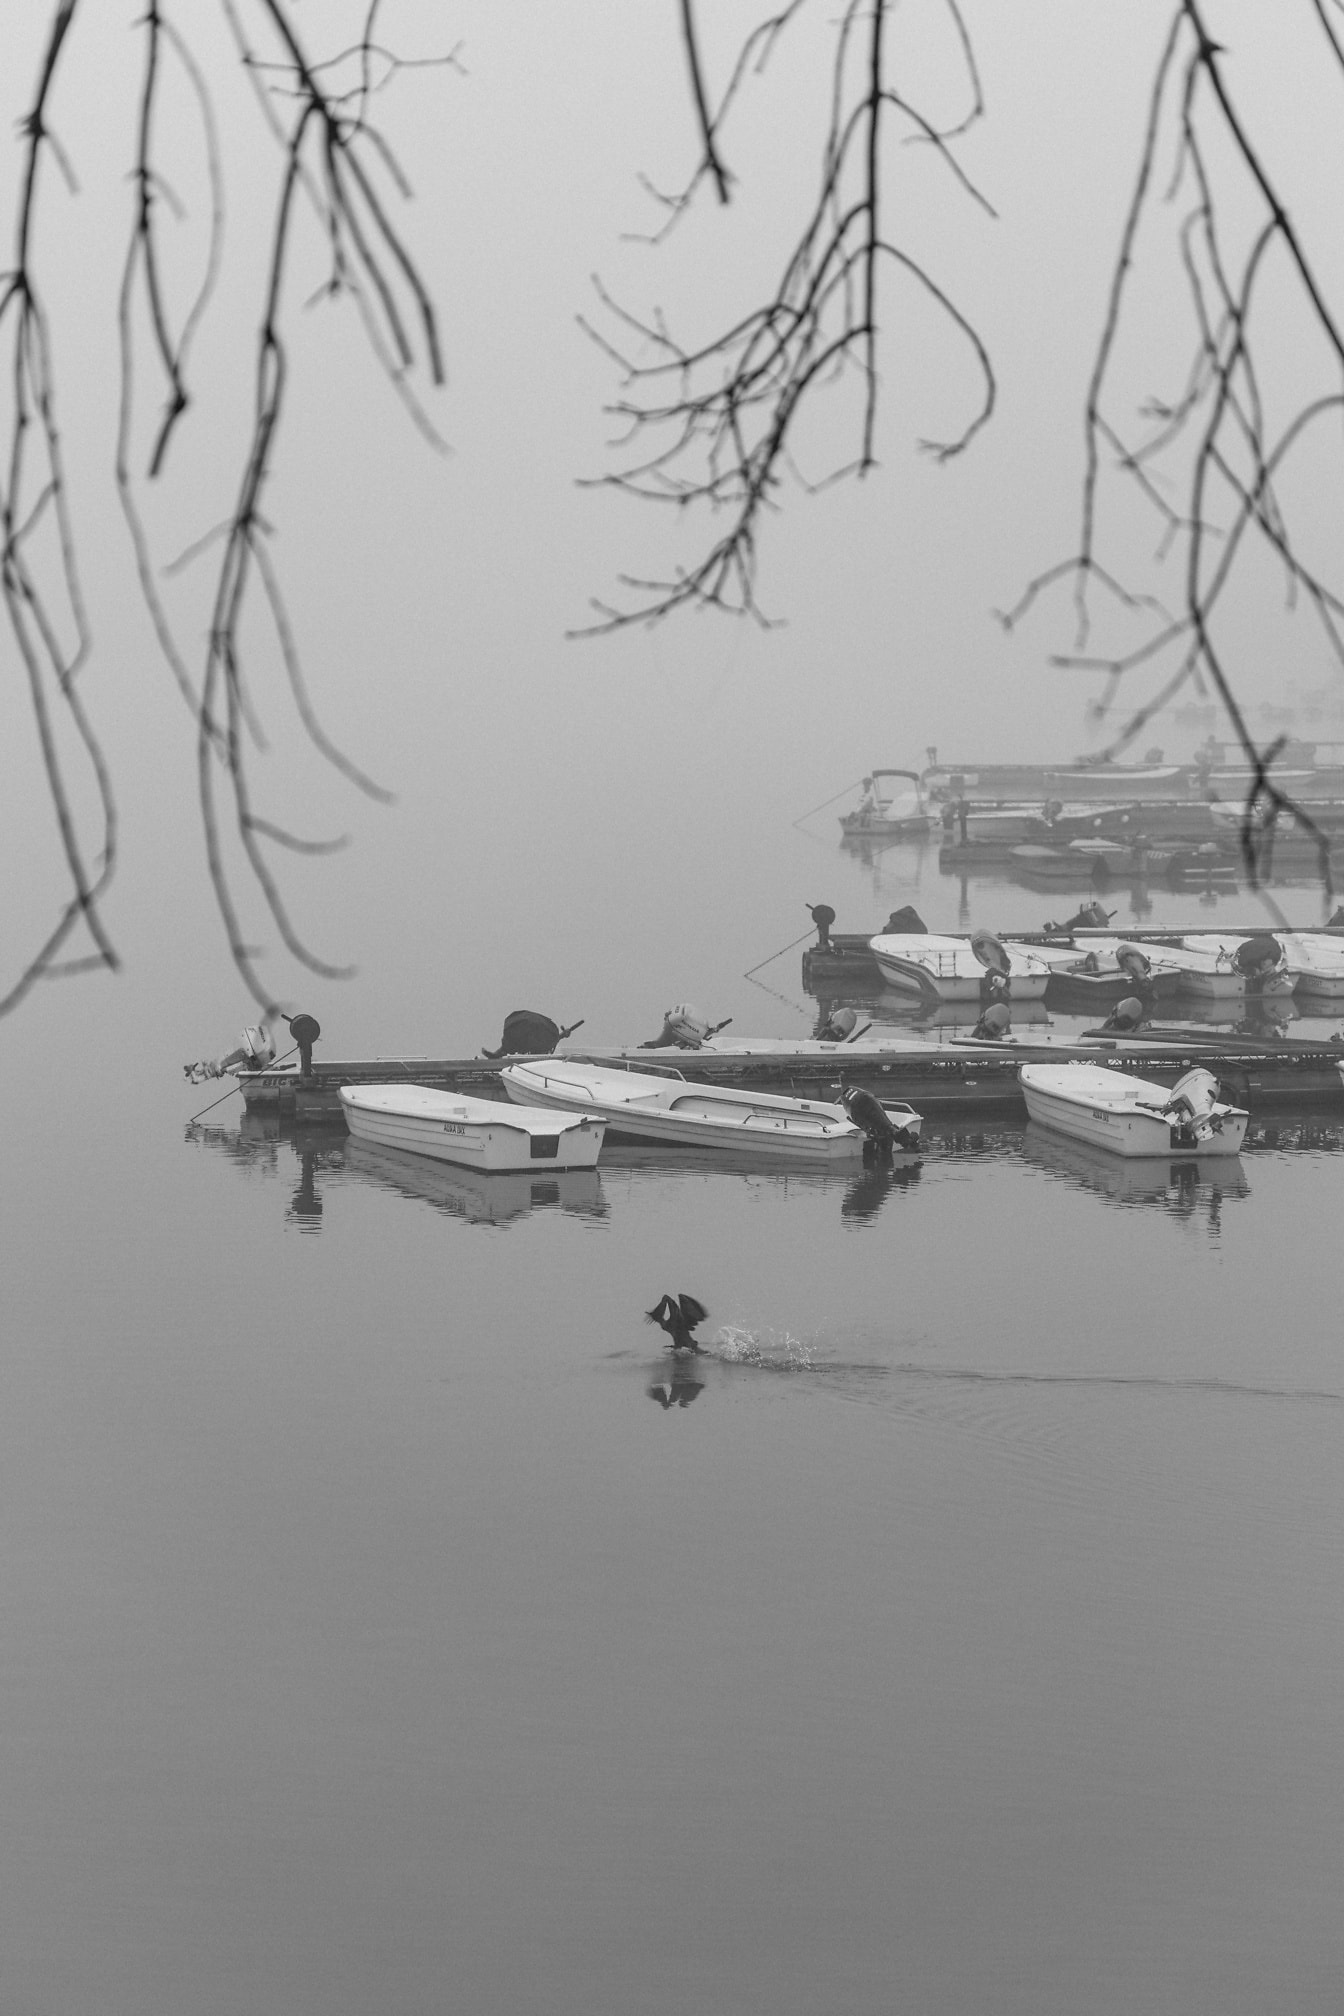 Ảnh đen trắng của một nhóm thuyền đánh cá nhỏ trên hồ trong sương mù dày đặc